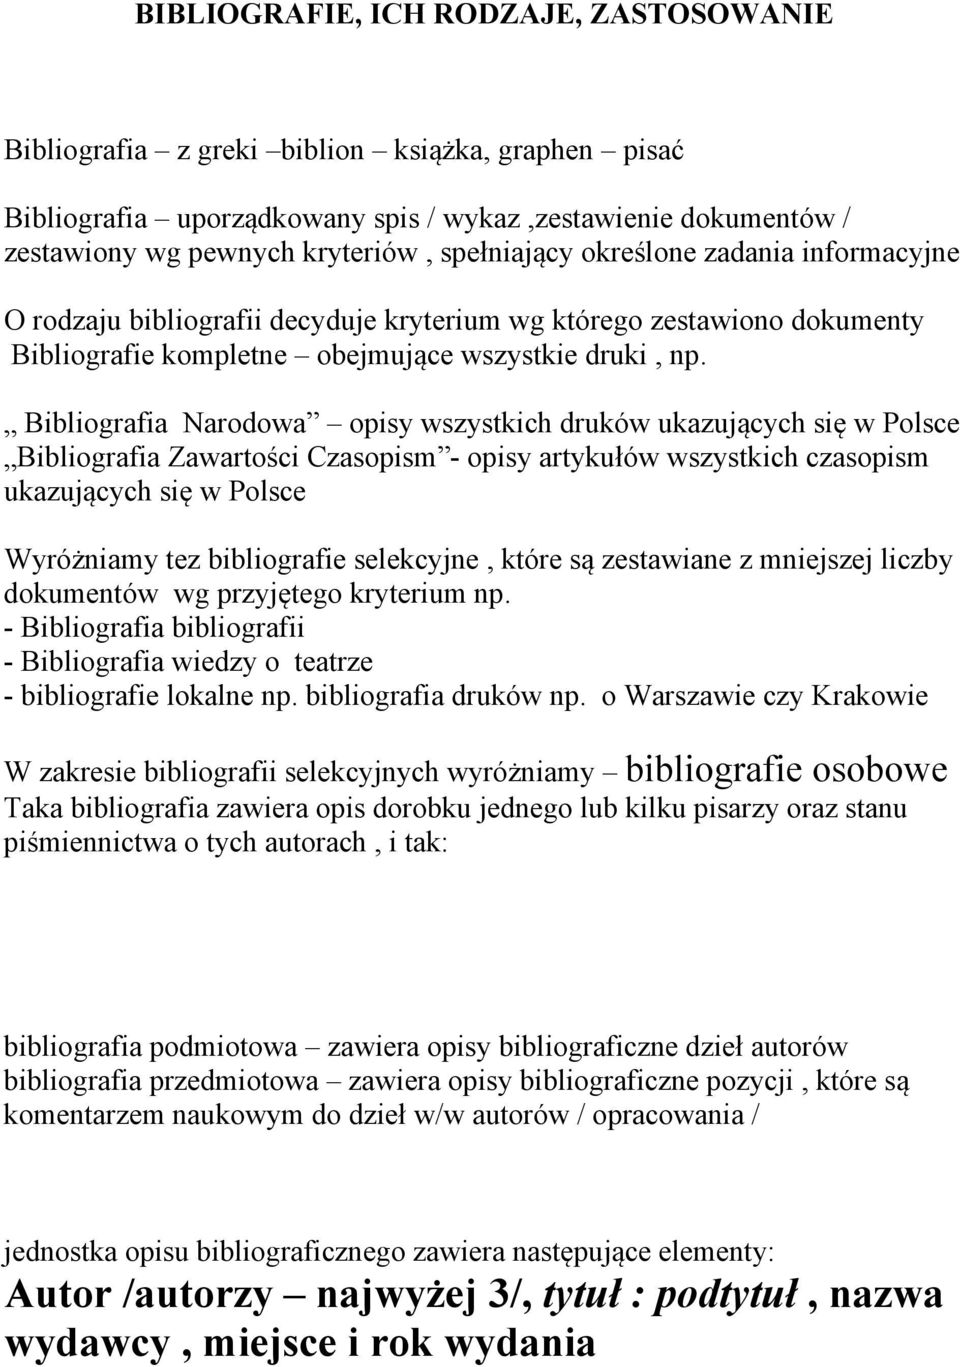 Bibliografia Narodowa opisy wszystkich druków ukazujących się w Polsce Bibliografia Zawartości Czasopism - opisy artykułów wszystkich czasopism ukazujących się w Polsce Wyróżniamy tez bibliografie